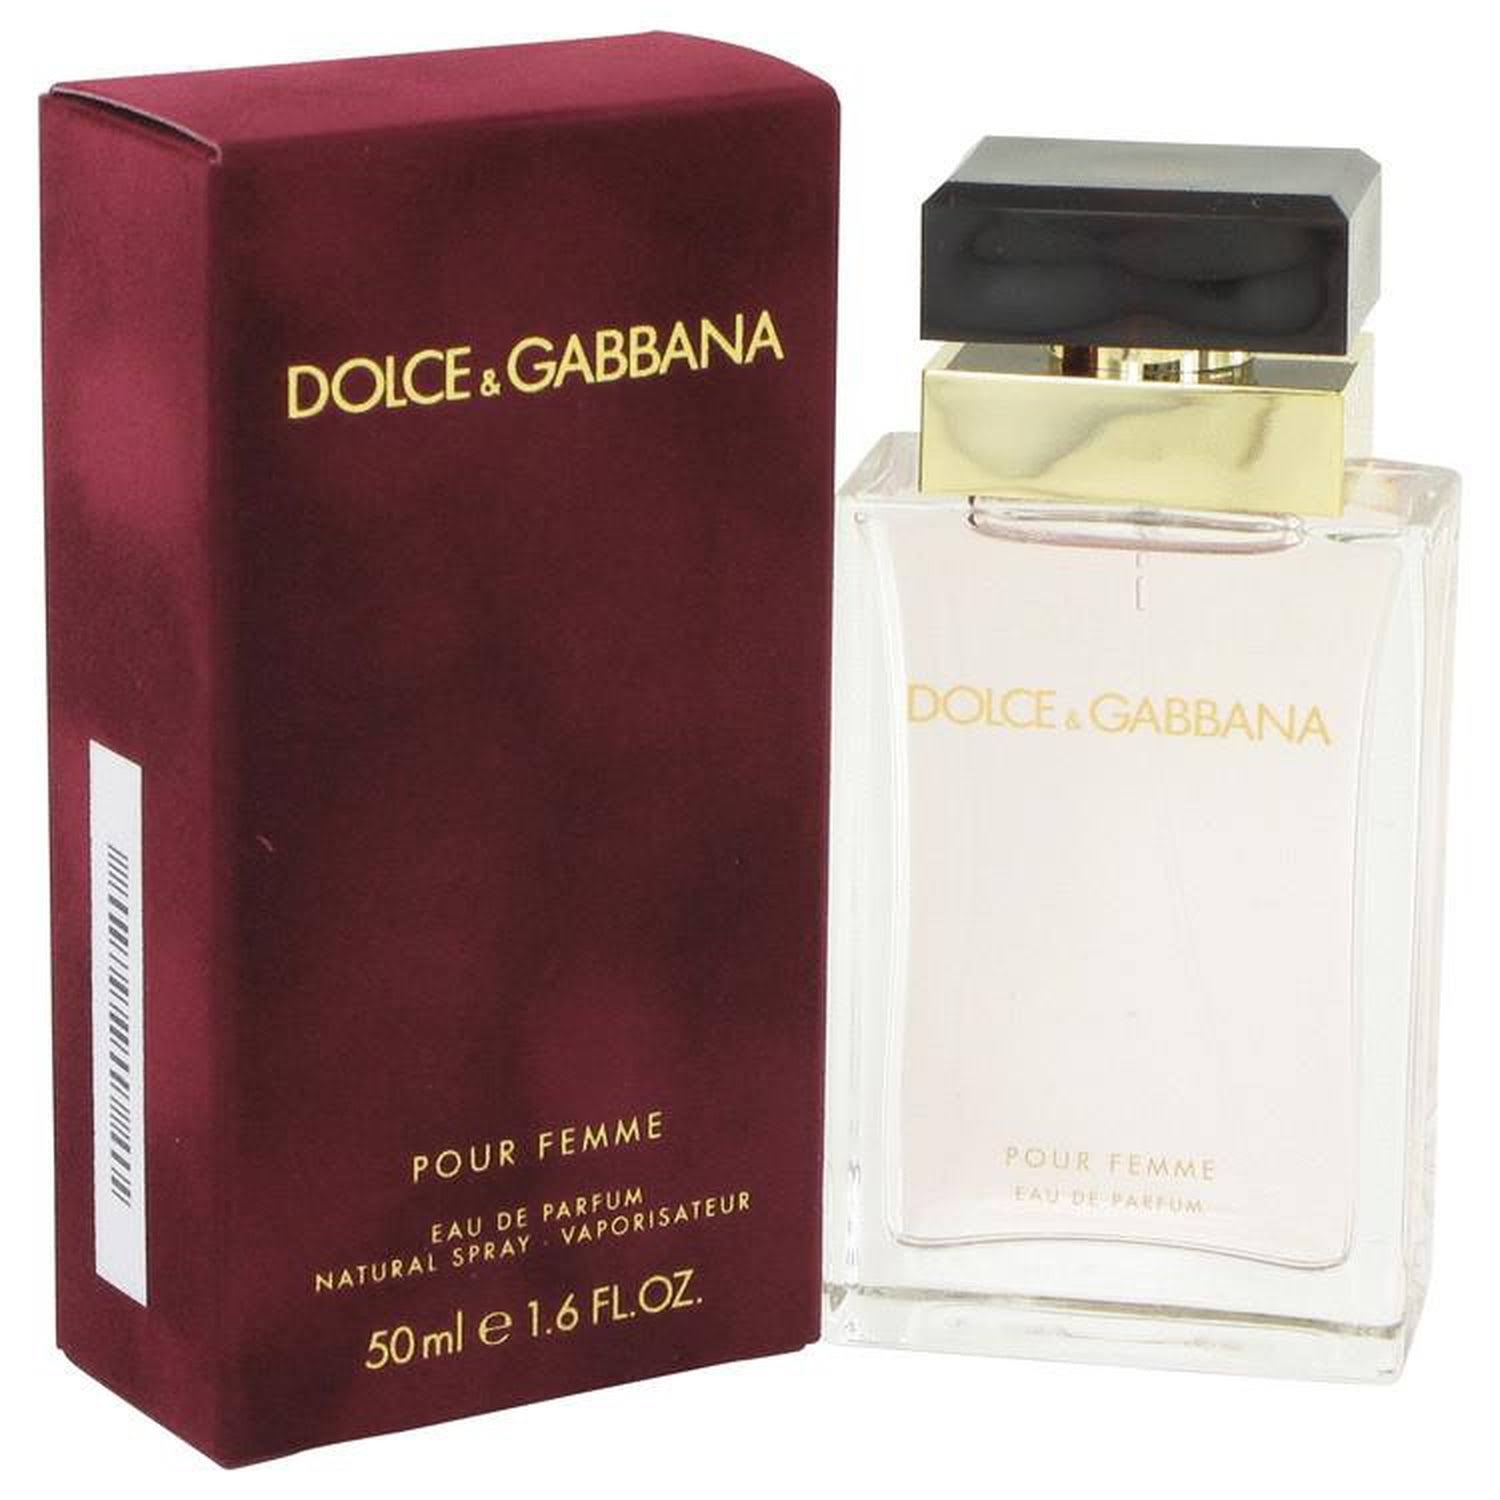 Dolce & Gabbana Pour Femme for Women Eau de Parfum - 50ml